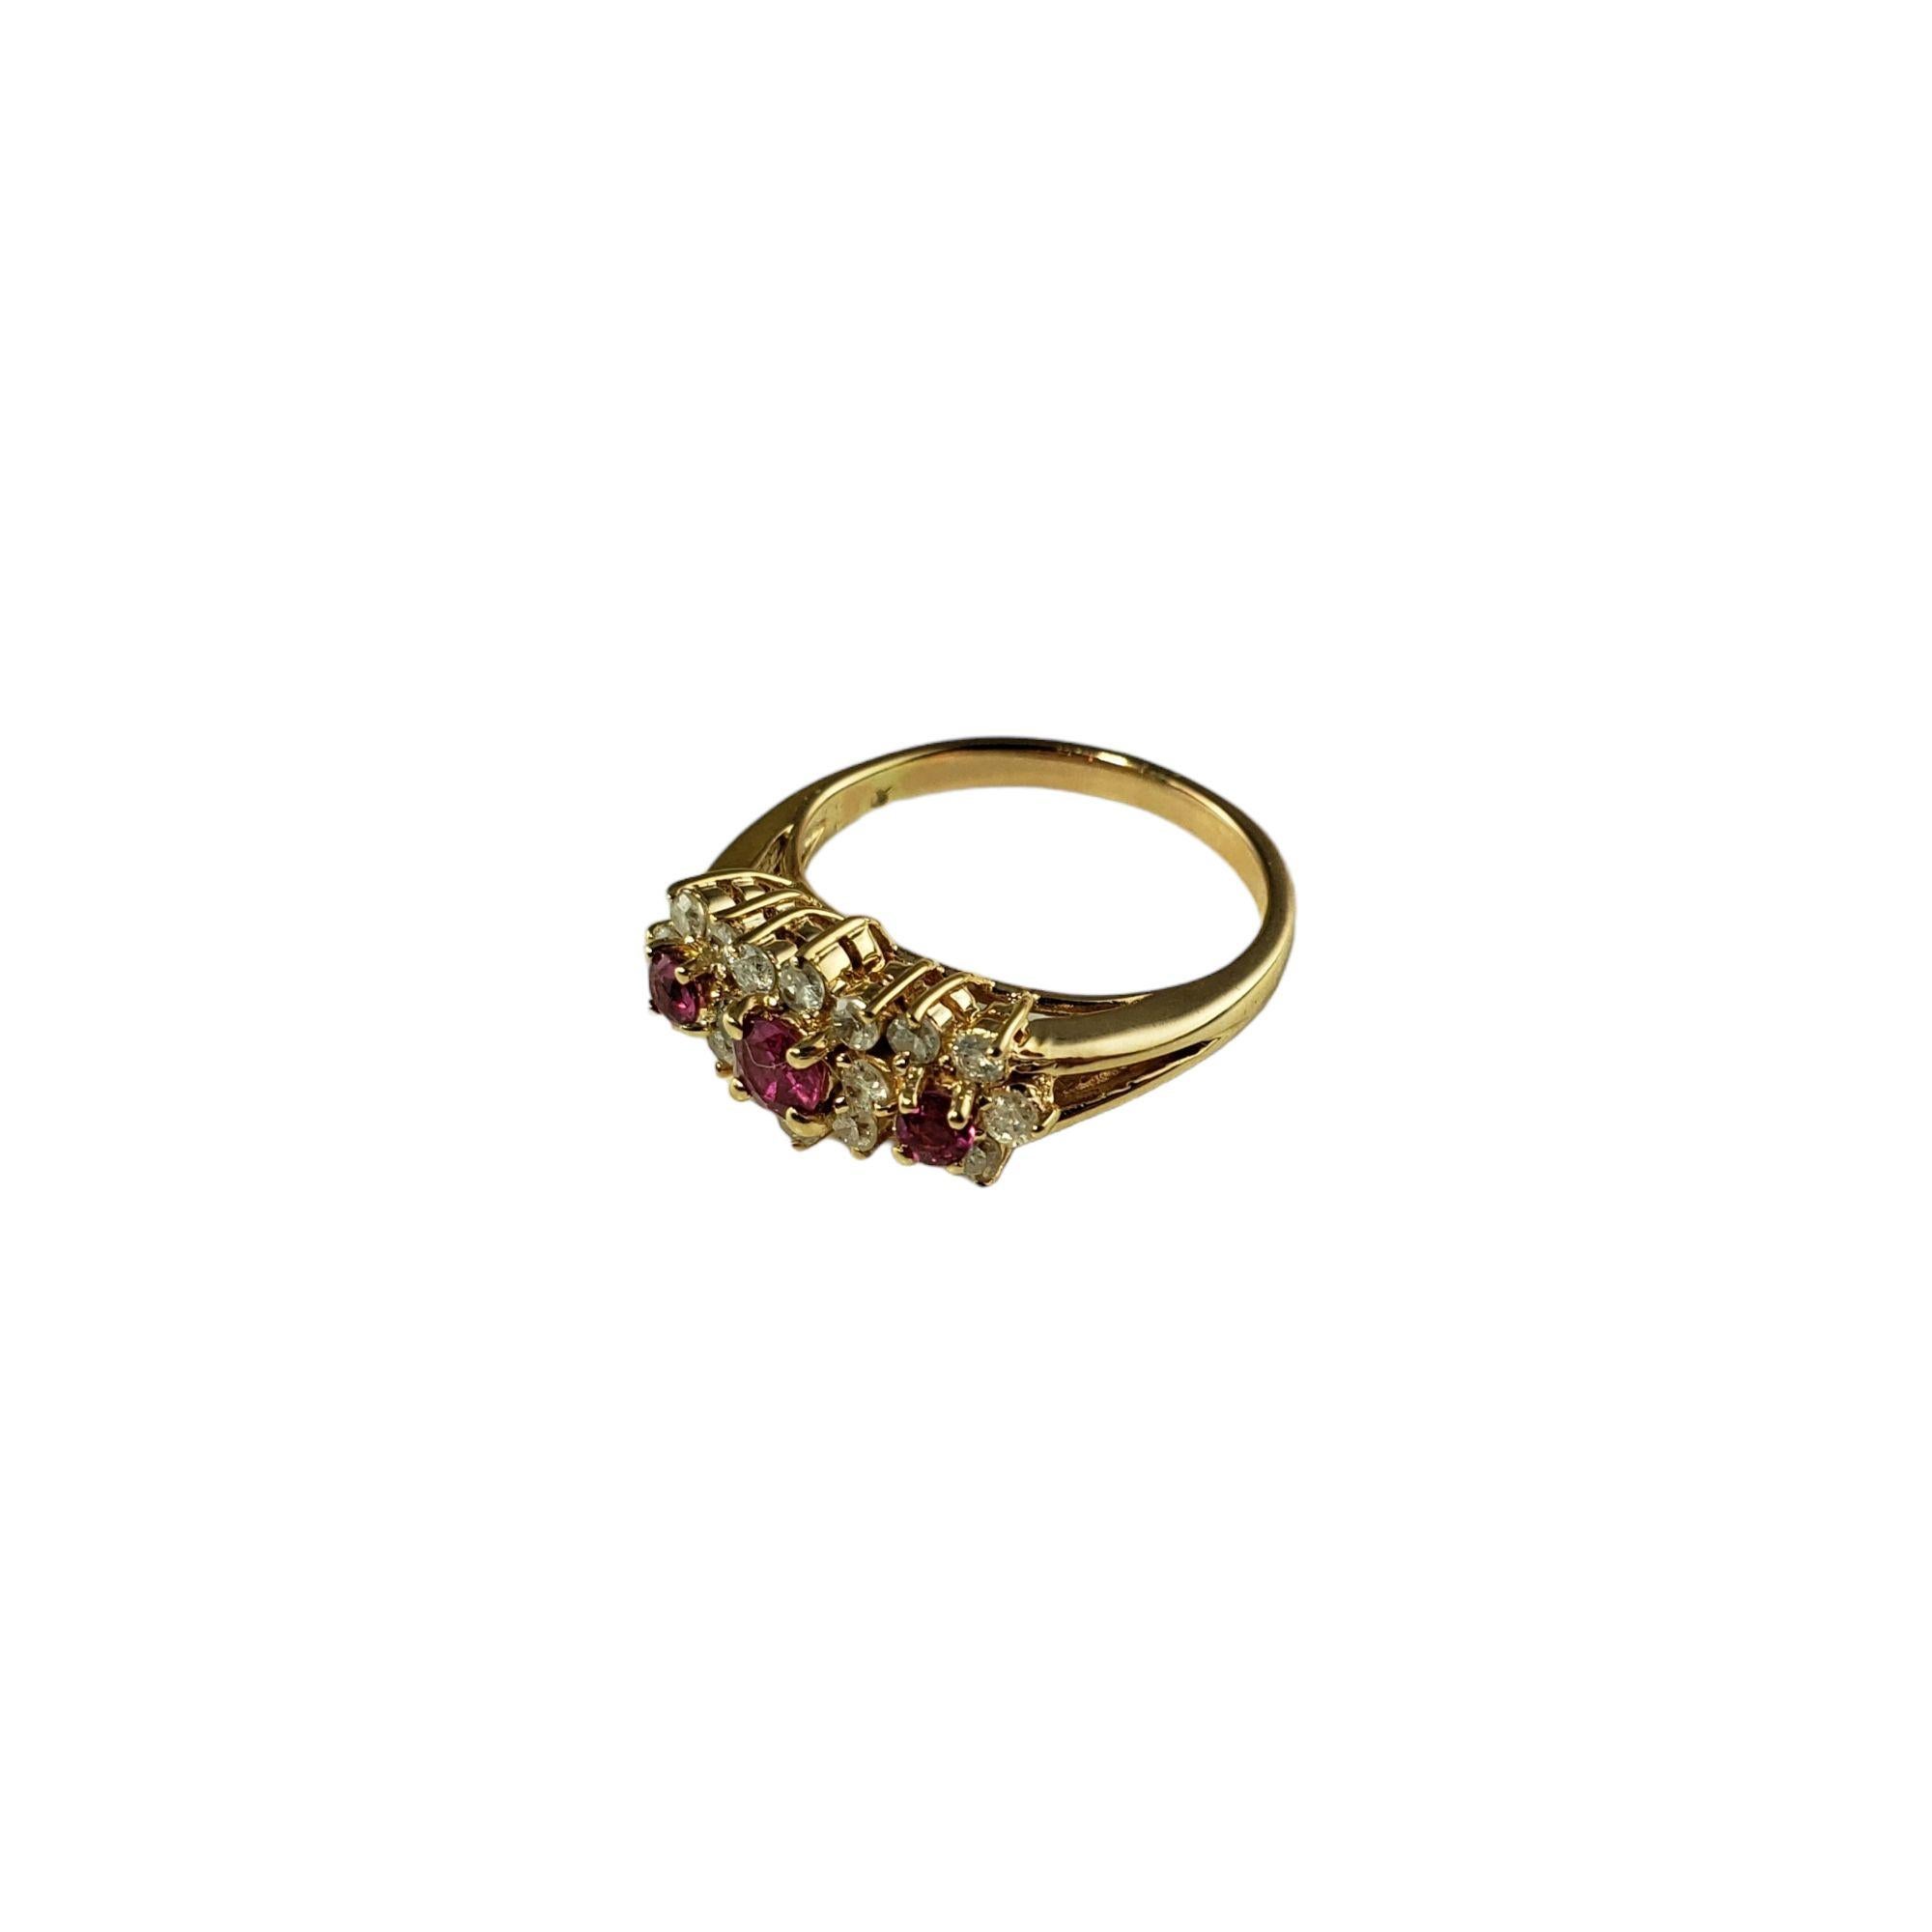 Vintage 14 Karat Gelbgold rosa Saphir und Diamant-Ring Größe 5,25 JAGi zertifiziert-

Dieser elegante Ring ist mit drei runden rosafarbenen Saphiren und 18 runden Diamanten im Brillantschliff in klassischem 14-karätigem Gelbgold gefasst. Breite: 7